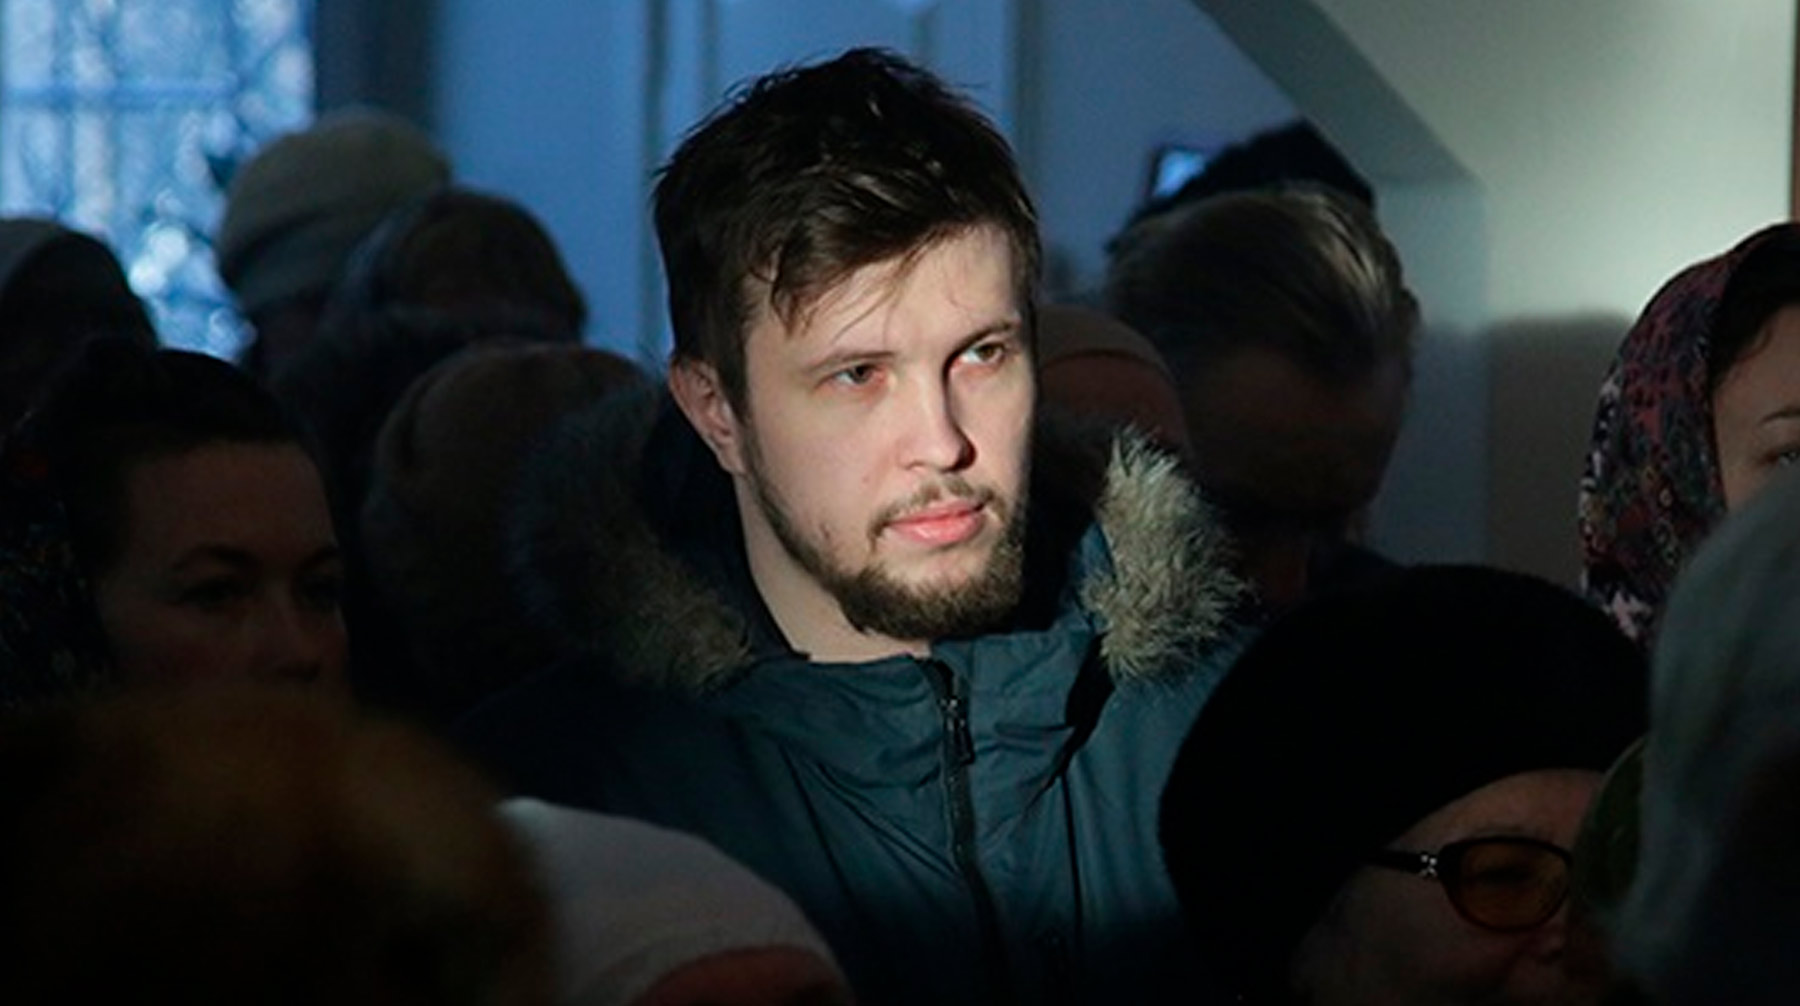 Всеволоду Могучеву ранее дали пять суток административного ареста за неповиновение полиции Фото: © Вконтакте / Всеволод Могучий